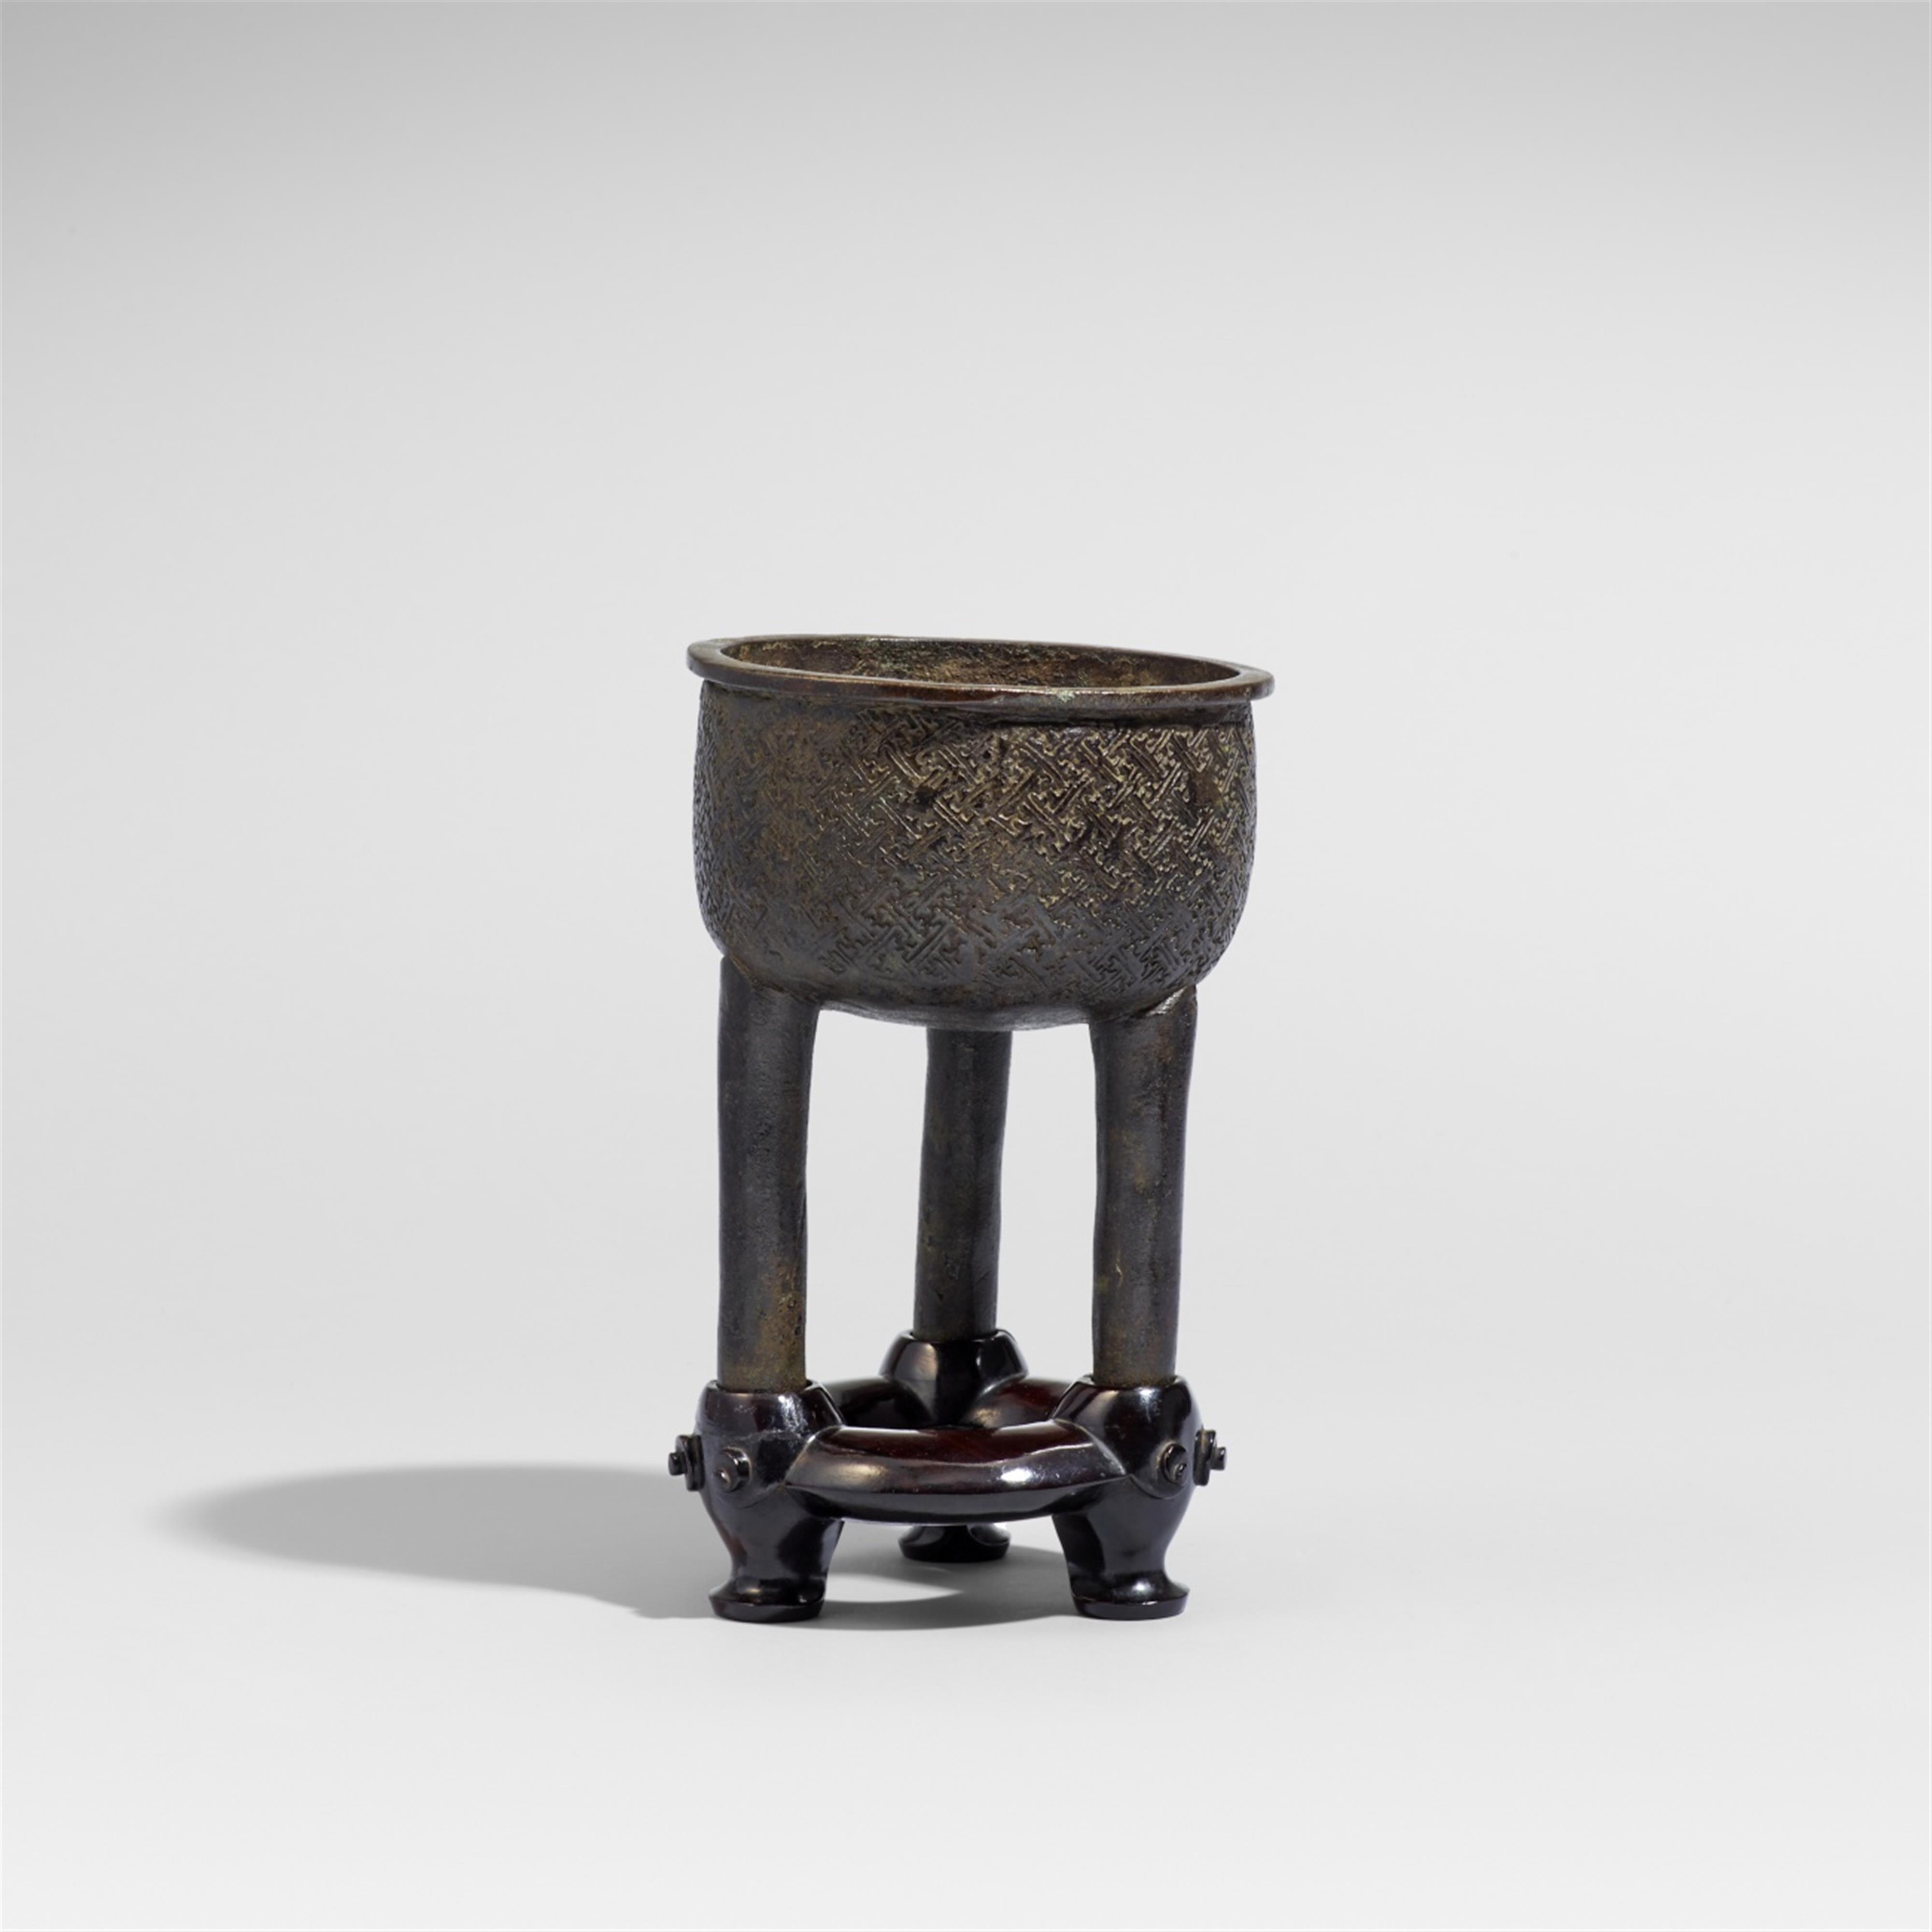 Archaistischer Weihrauchbrenner vom Typ ding. Bronze. Südliche Song-/Yuan-Zeit - image-1